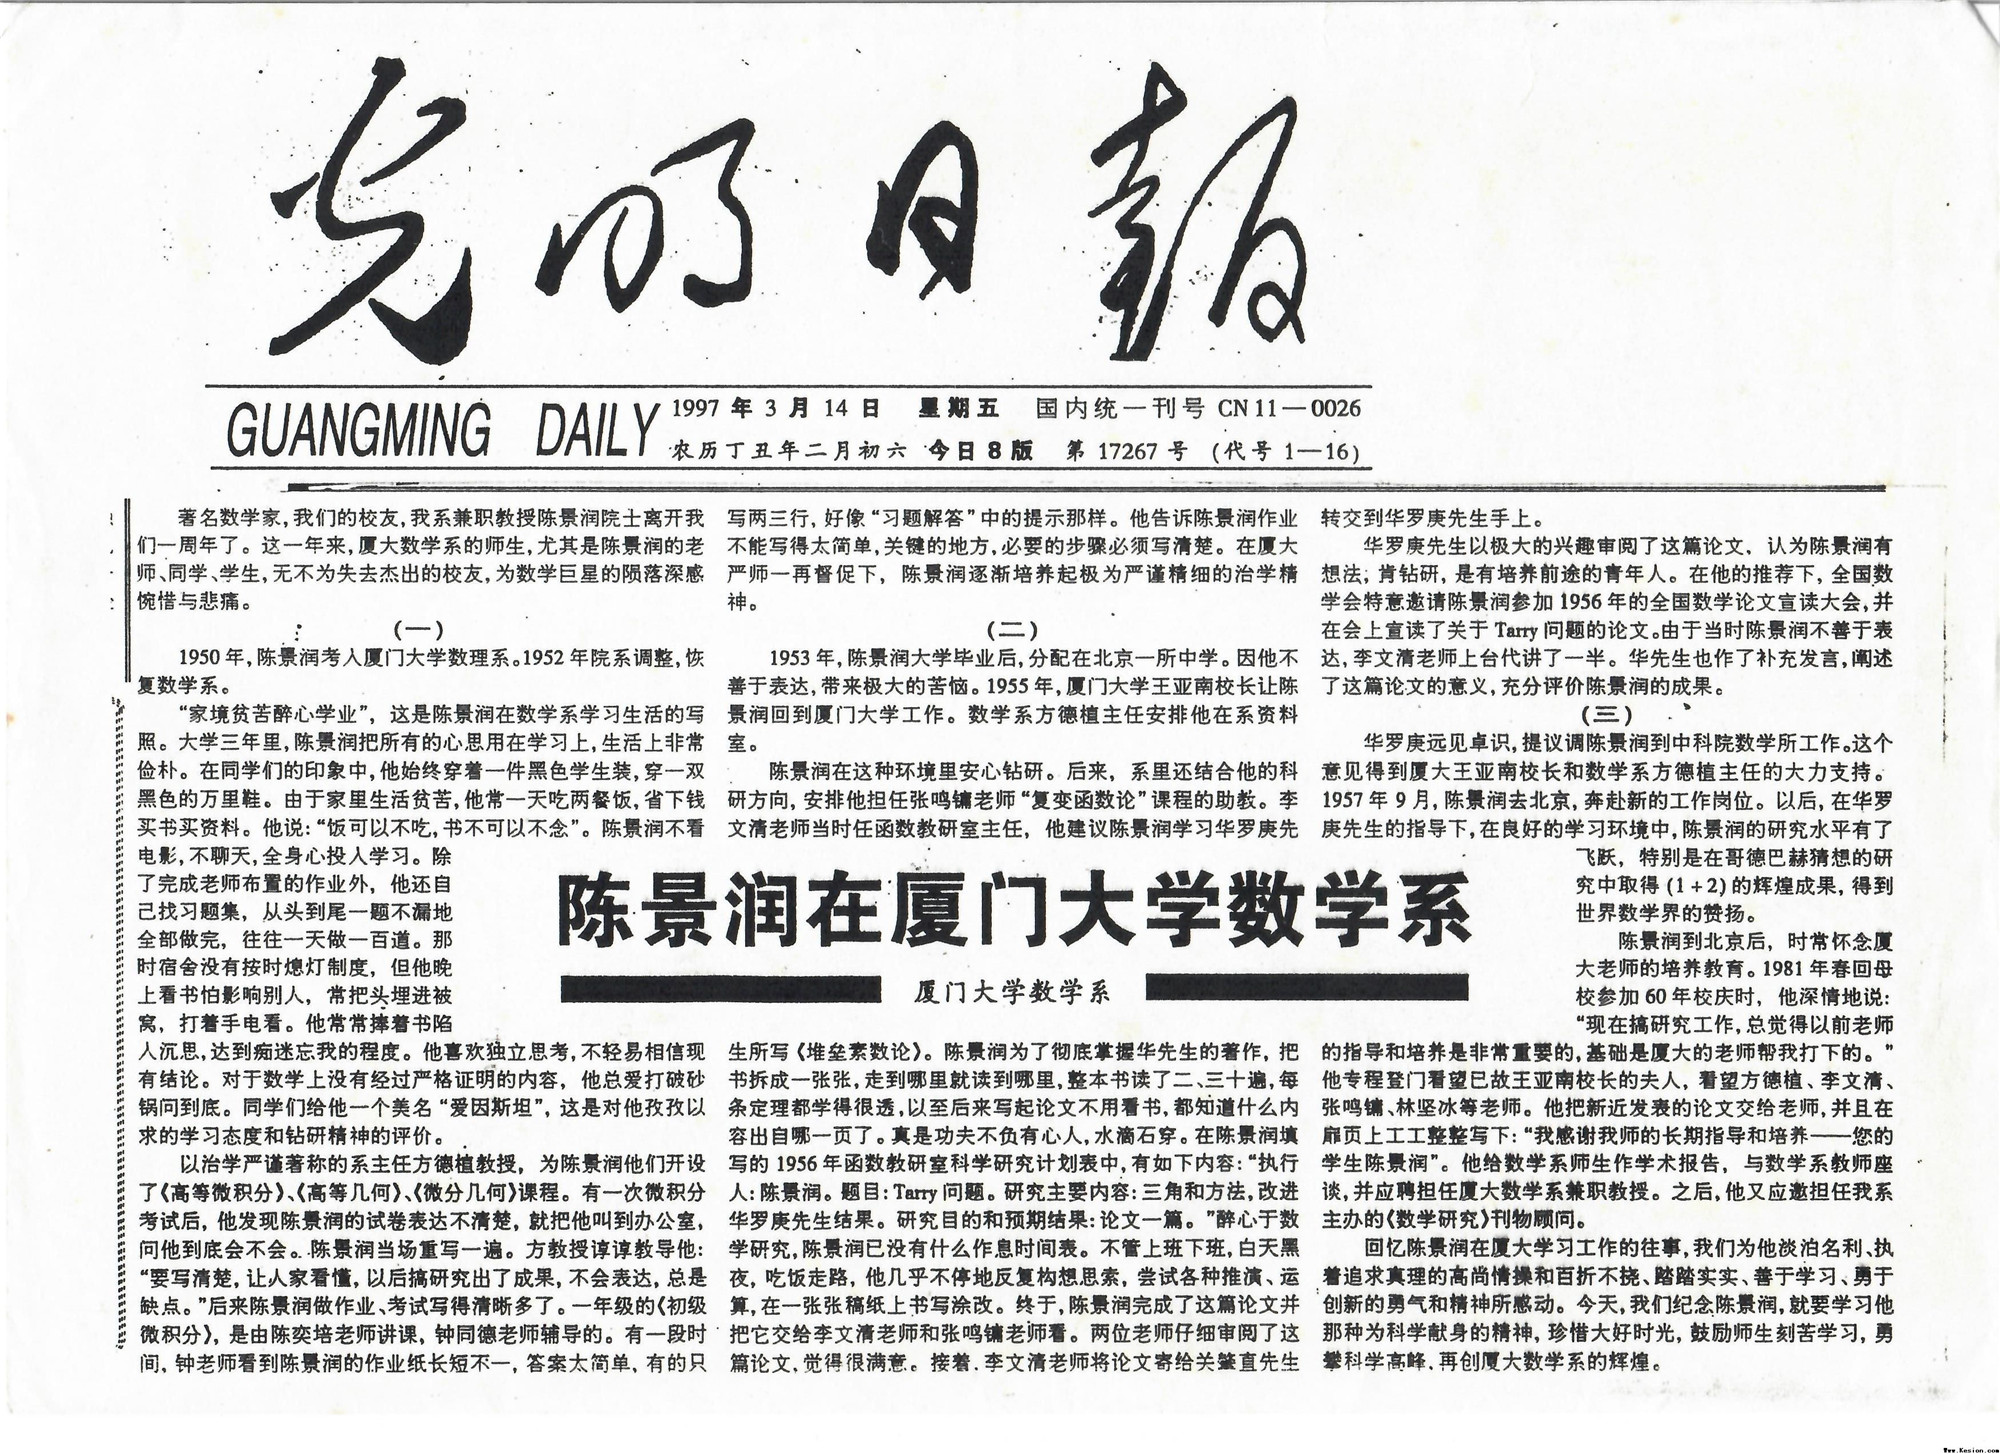 1997年3月14日光明日报刊发《陈景润在永乐高ylg888888数学系》